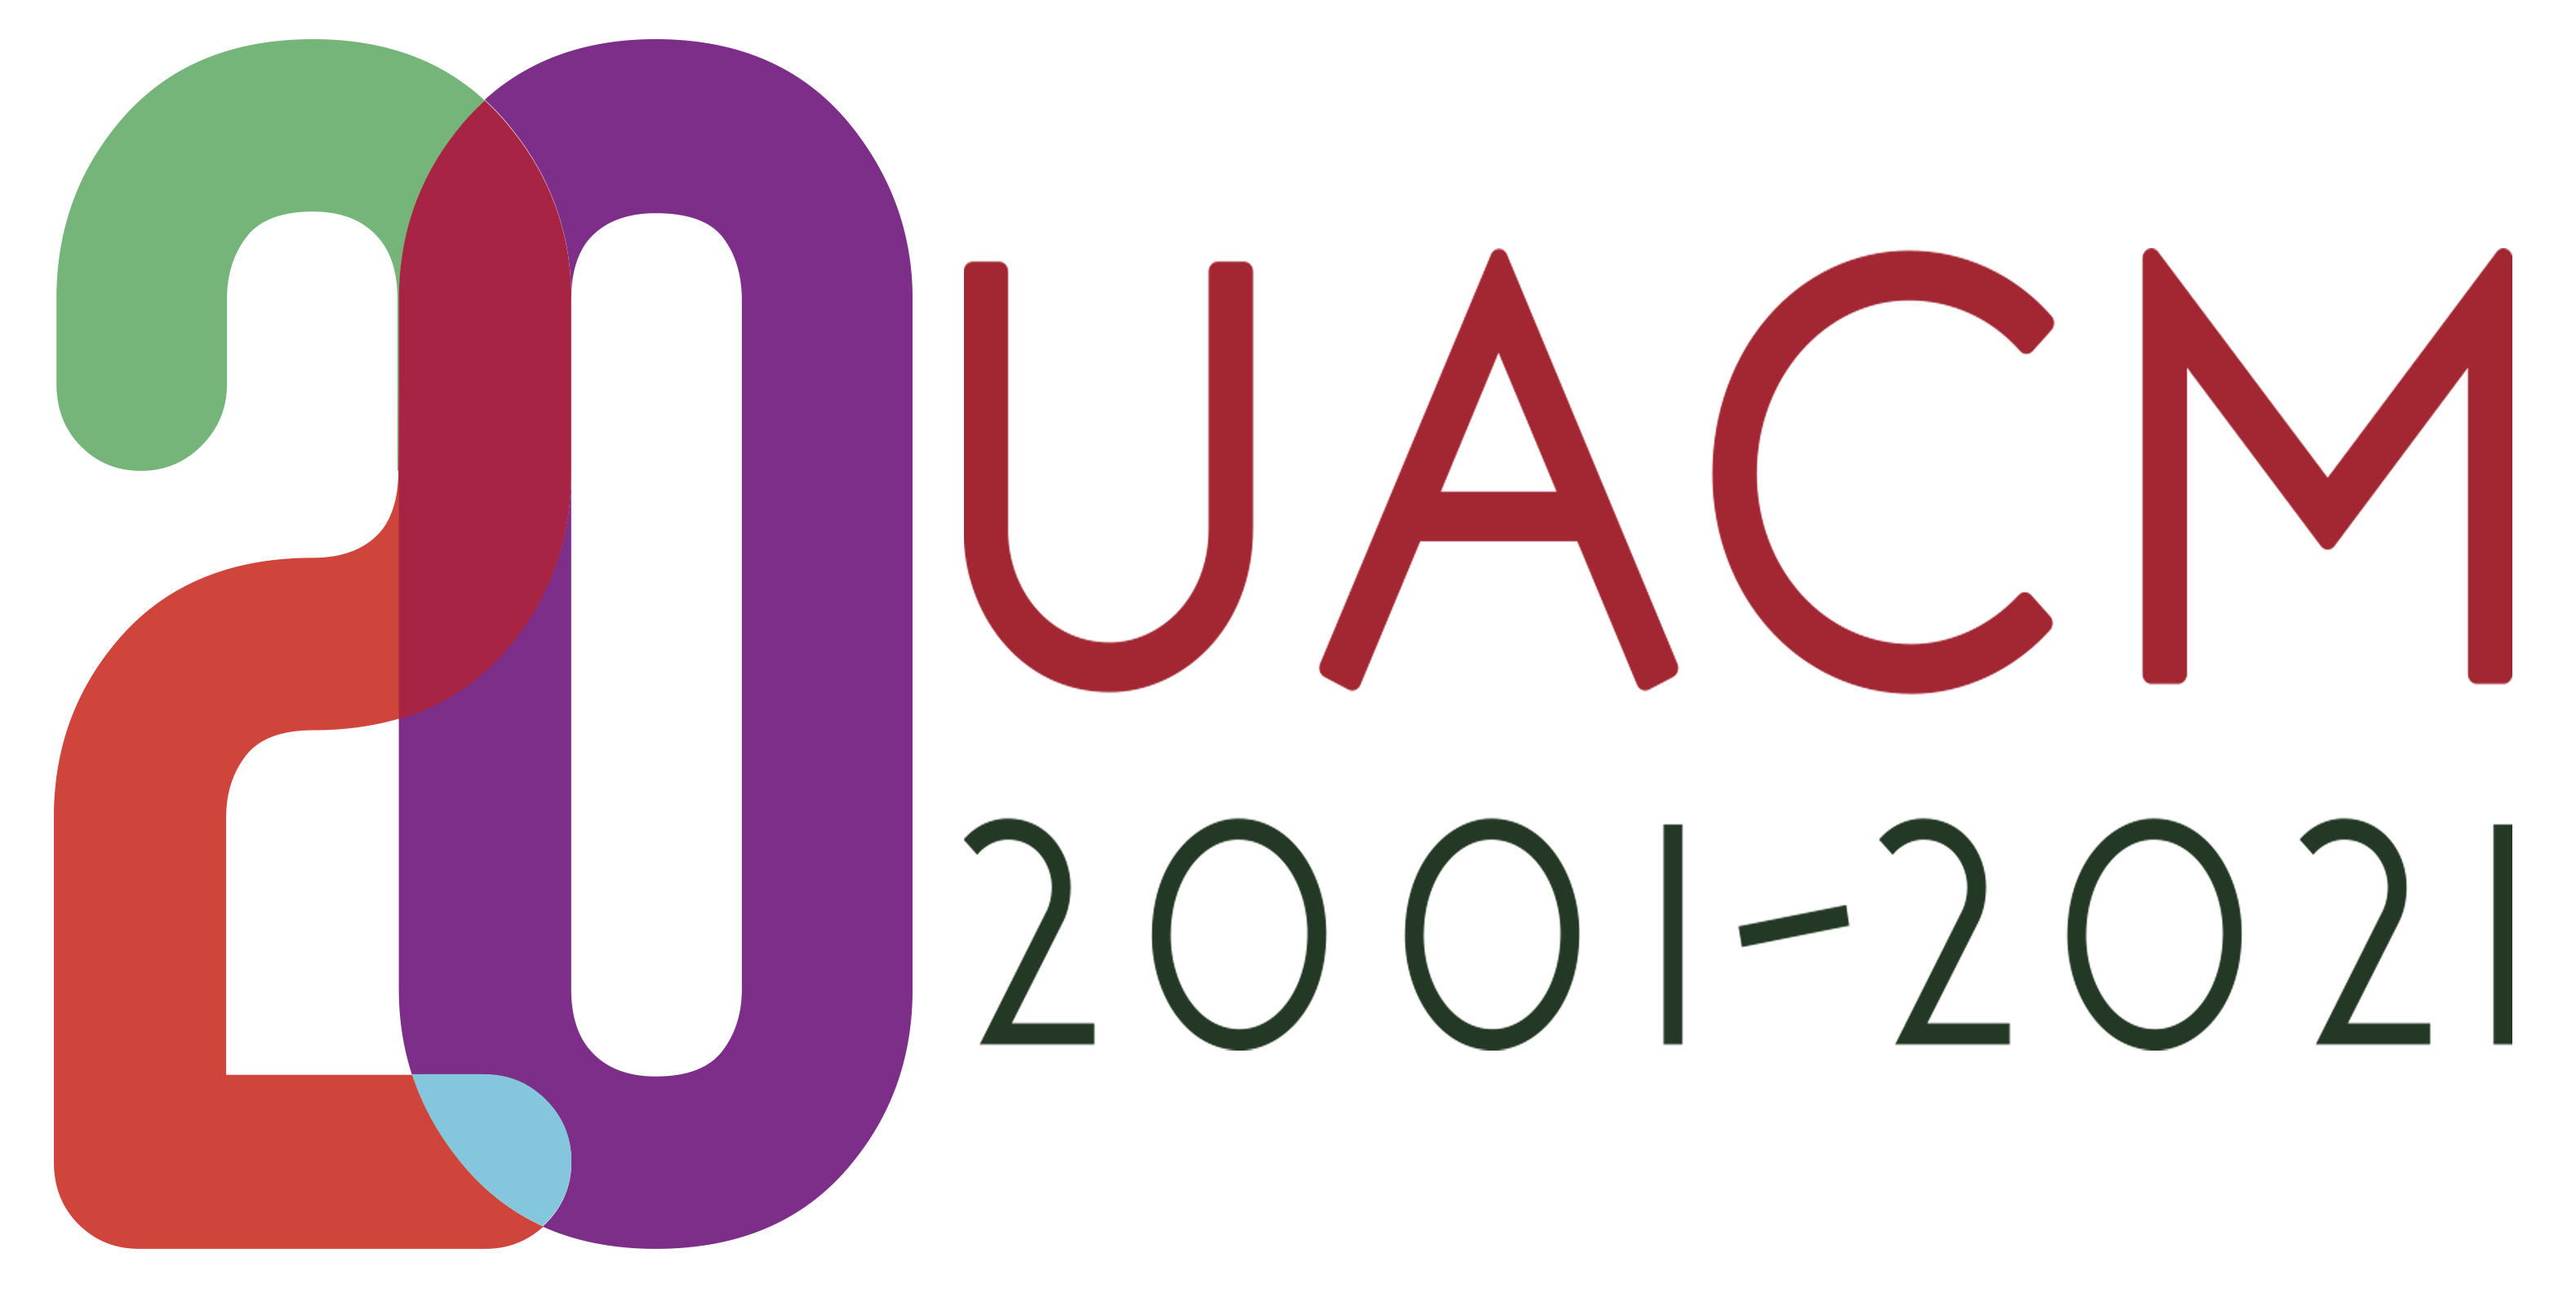 uacm logo